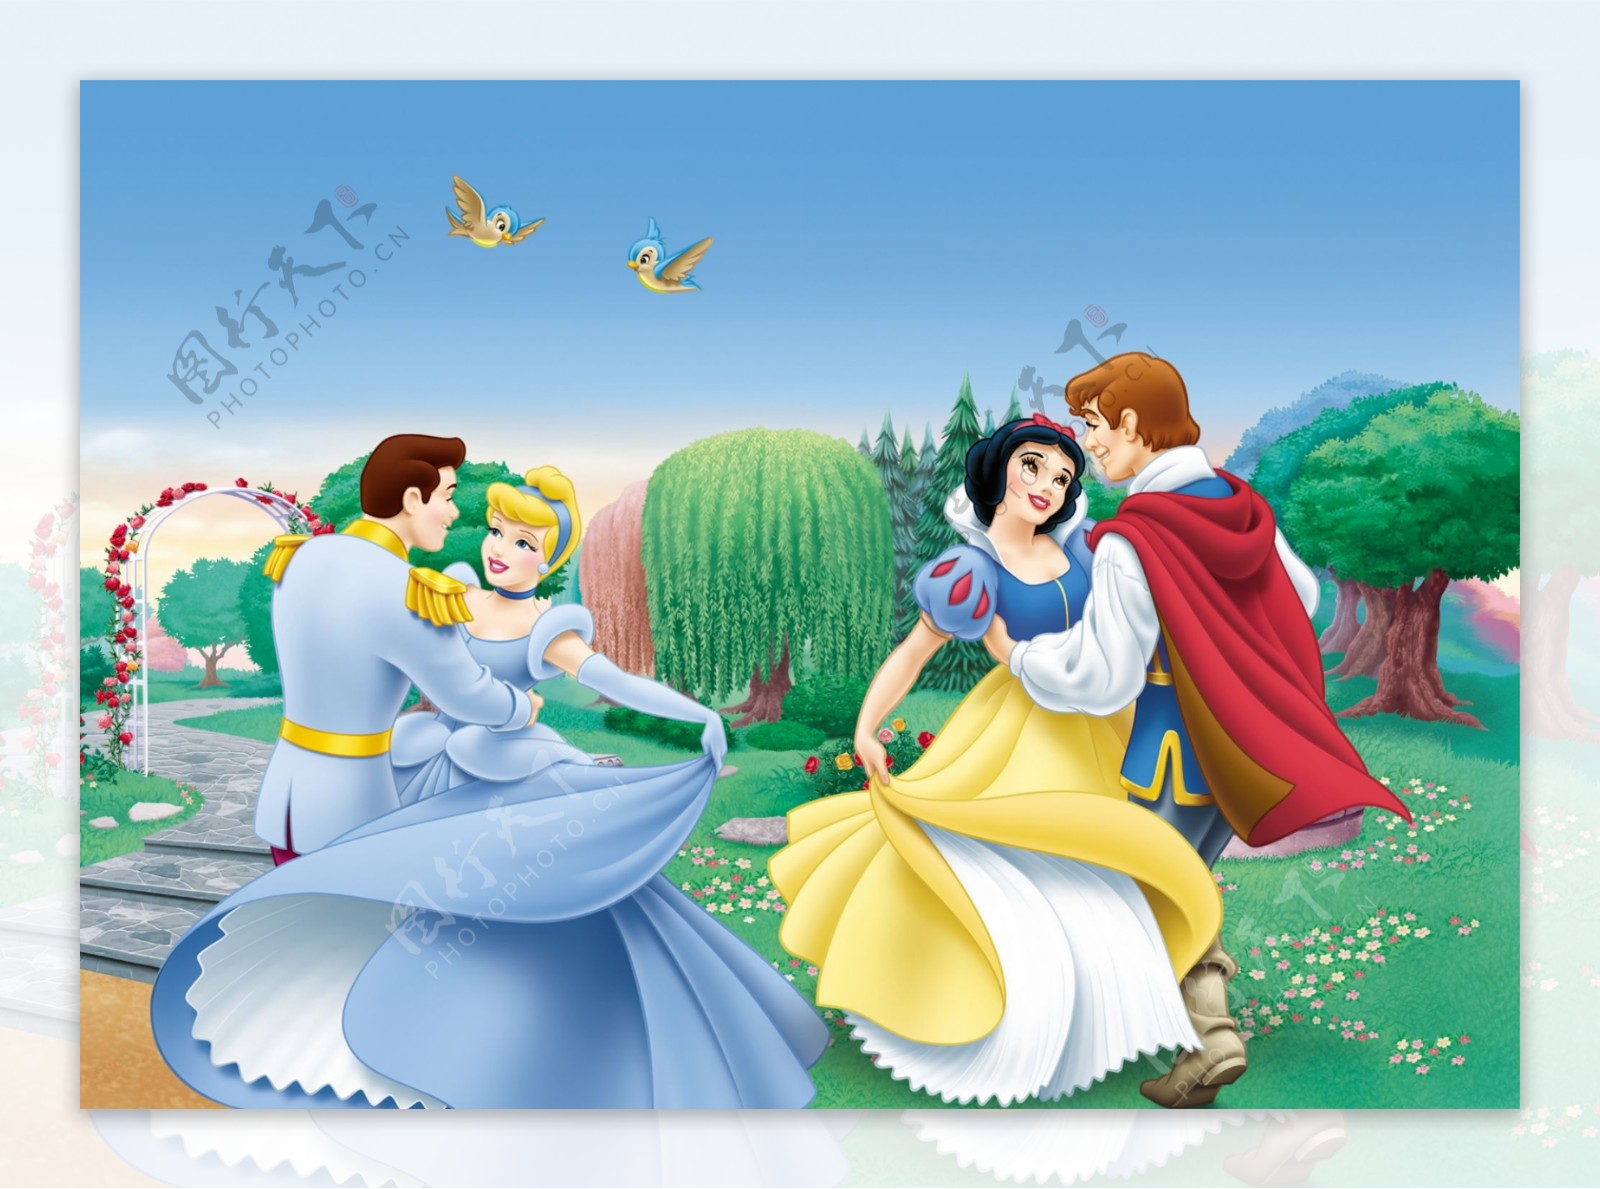 白雪公主和王子卡通图片